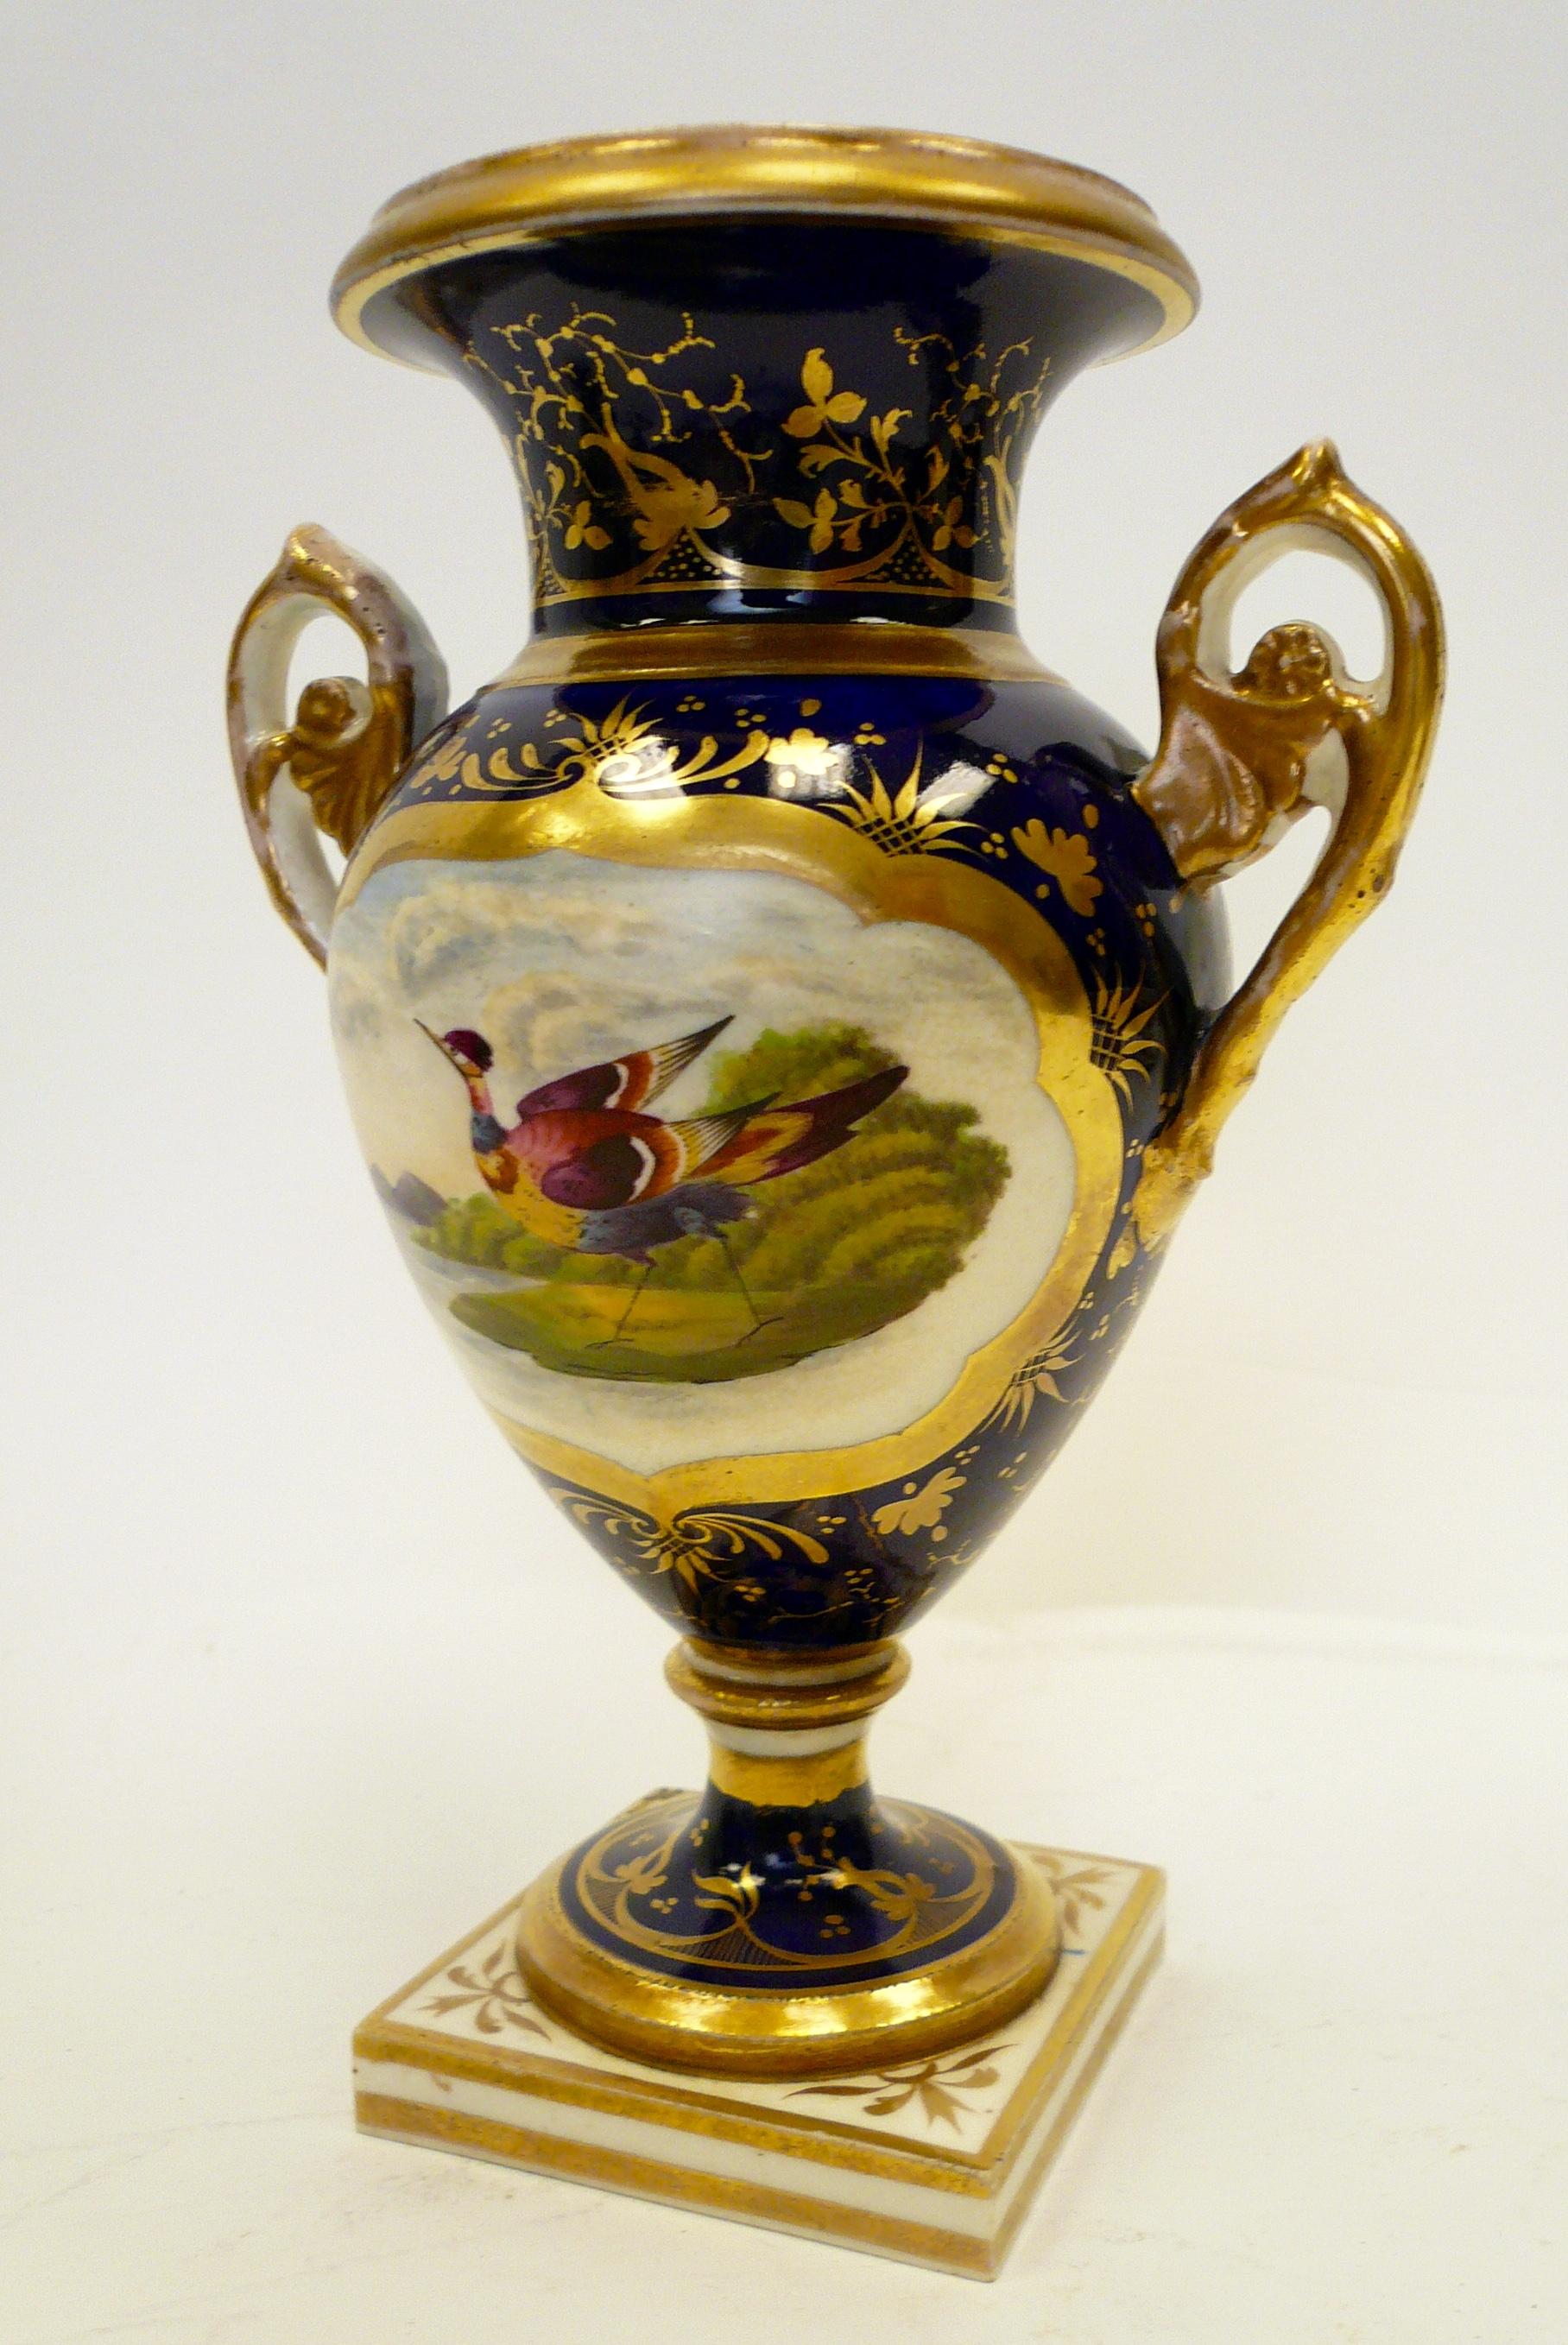 Diese wunderschön handbemalte Urne aus Derby-Porzellan zeigt einen exotischen Vogel in einer Landschaft und vergoldete Verzierungen auf einem kobaltfarbenen Grund.